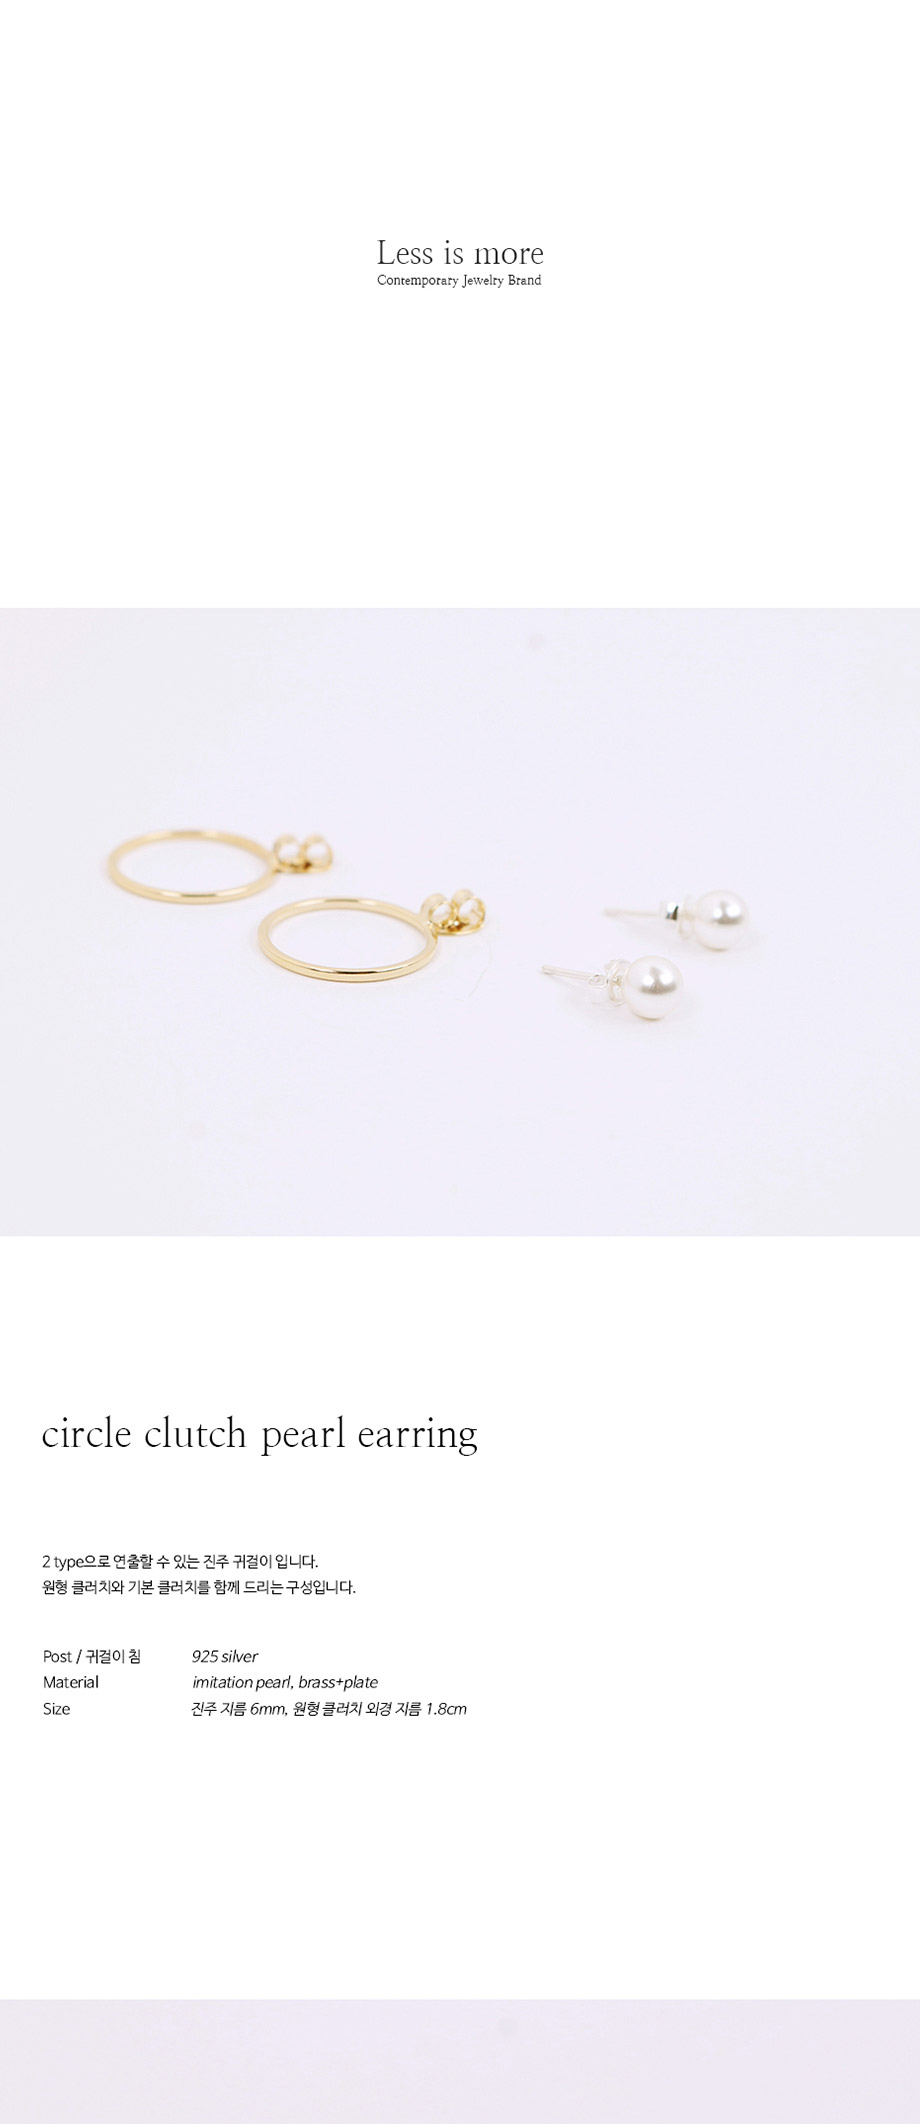 circle clutch pearl earring 26,000원 - 레스이즈모어 이동요망, X주얼리/시계, 귀걸이, 골드 바보사랑 circle clutch pearl earring 26,000원 - 레스이즈모어 이동요망, X주얼리/시계, 귀걸이, 골드 바보사랑